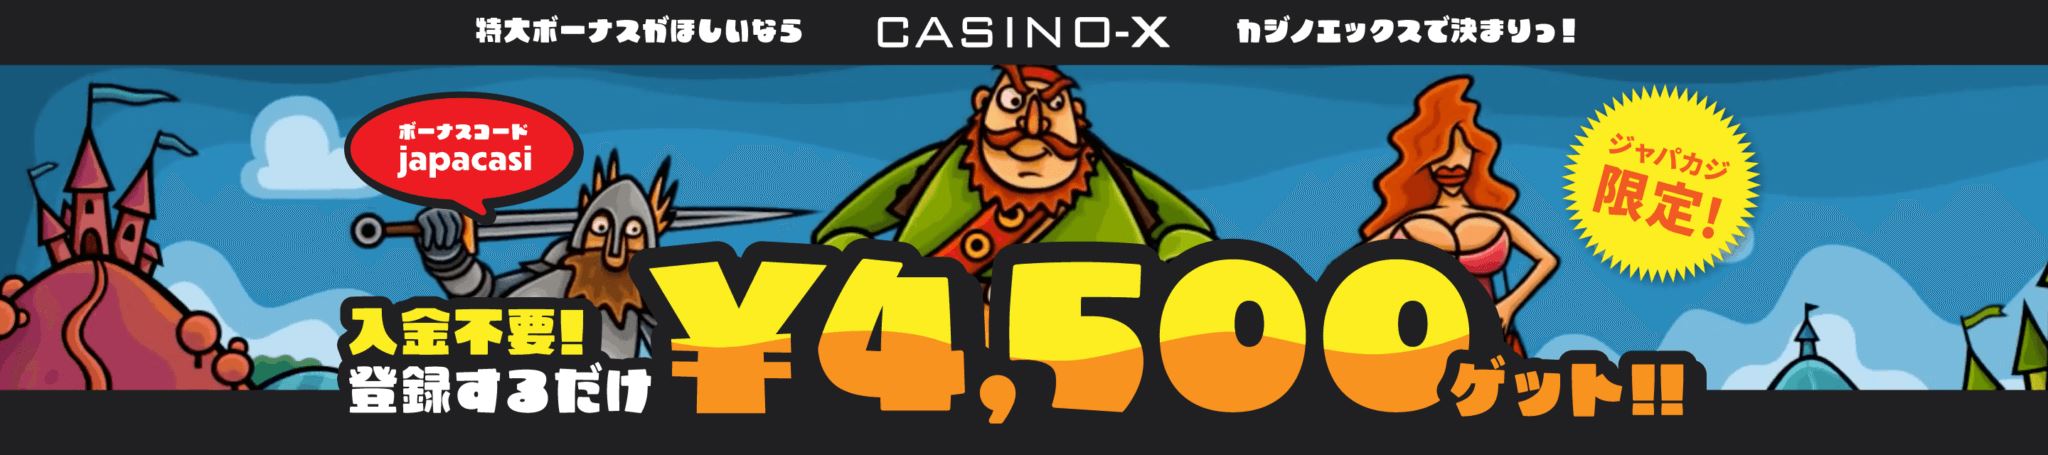 仕置 人 パチンコ 評判 【Casino-X】ジャパカジだけの入金不要ボーナス！